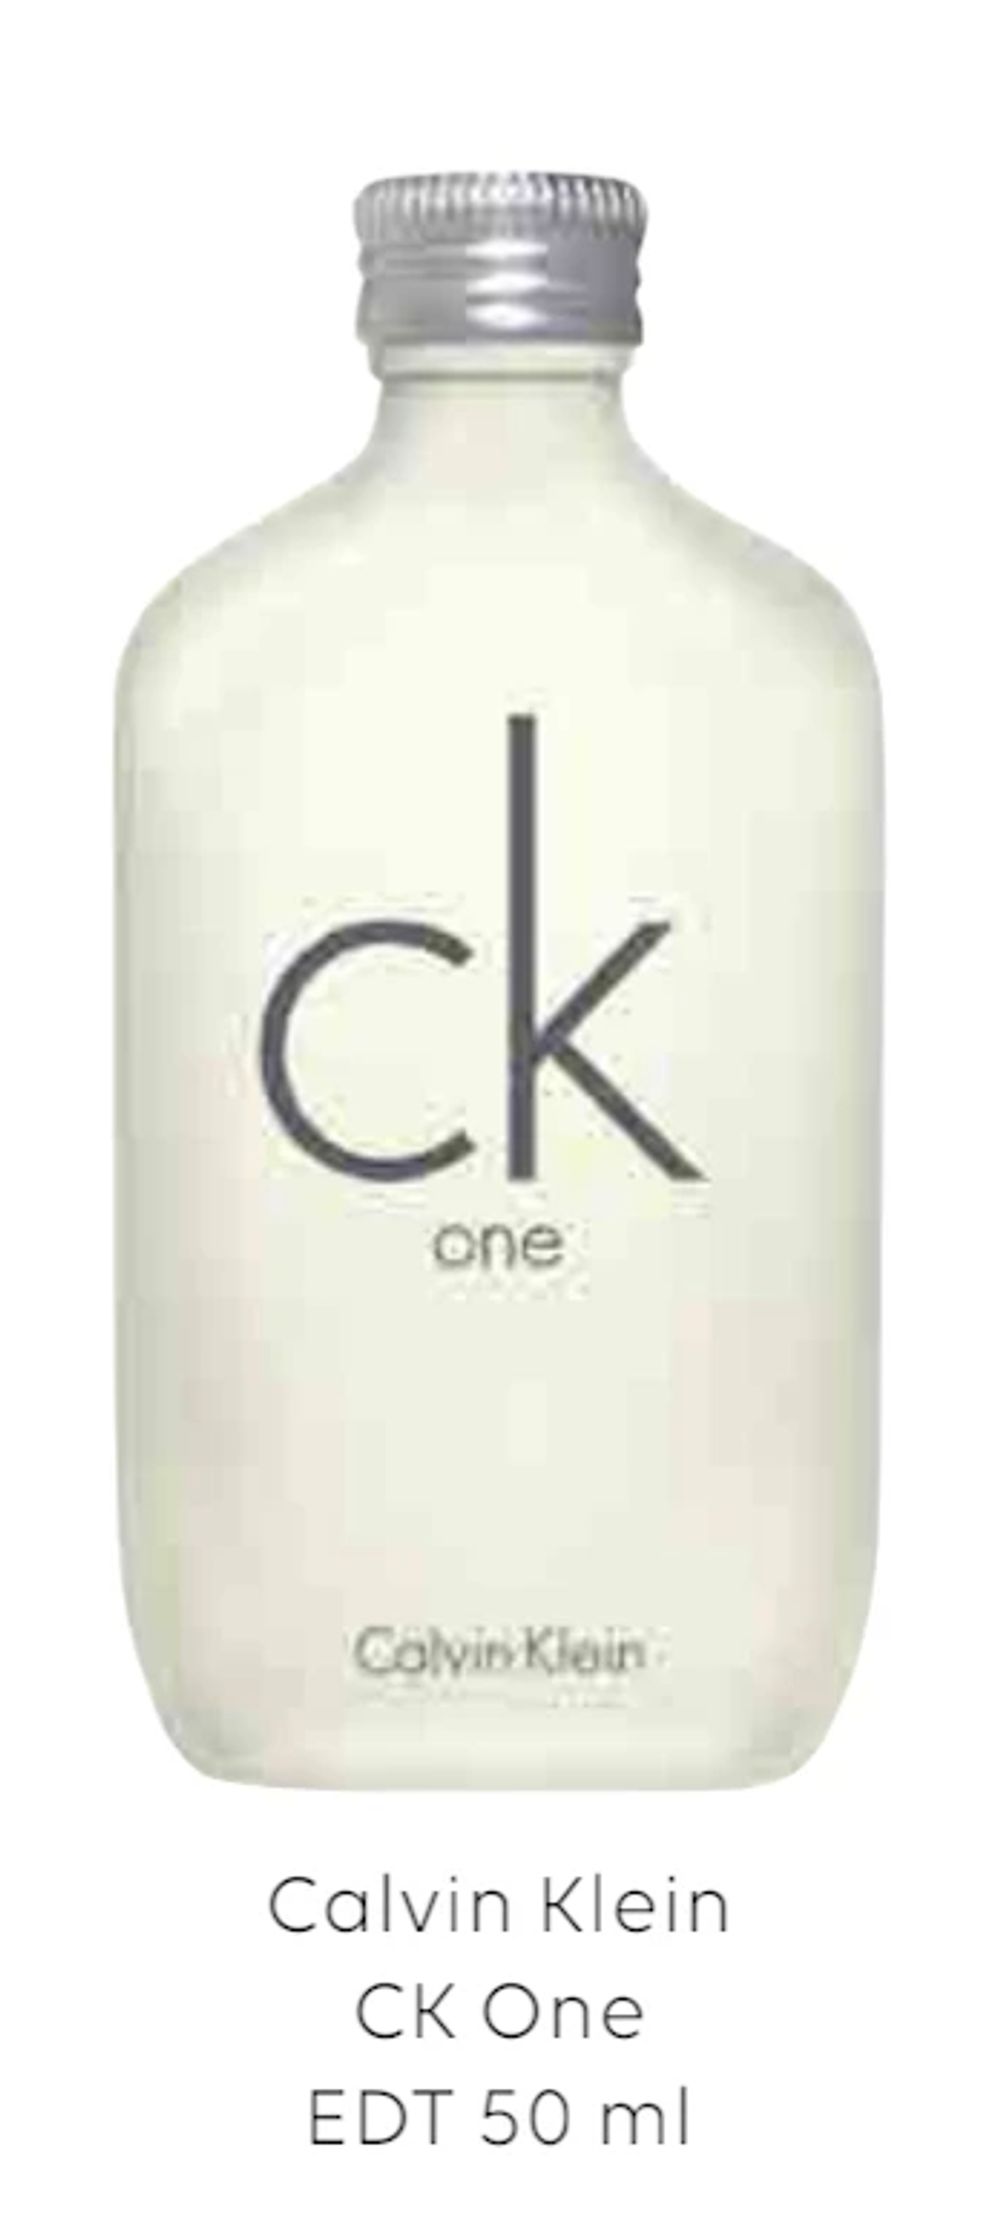 Tilbud på Calvin Klein CK One EDT 50 ml fra Scandlines Travel Shop til 159 kr.